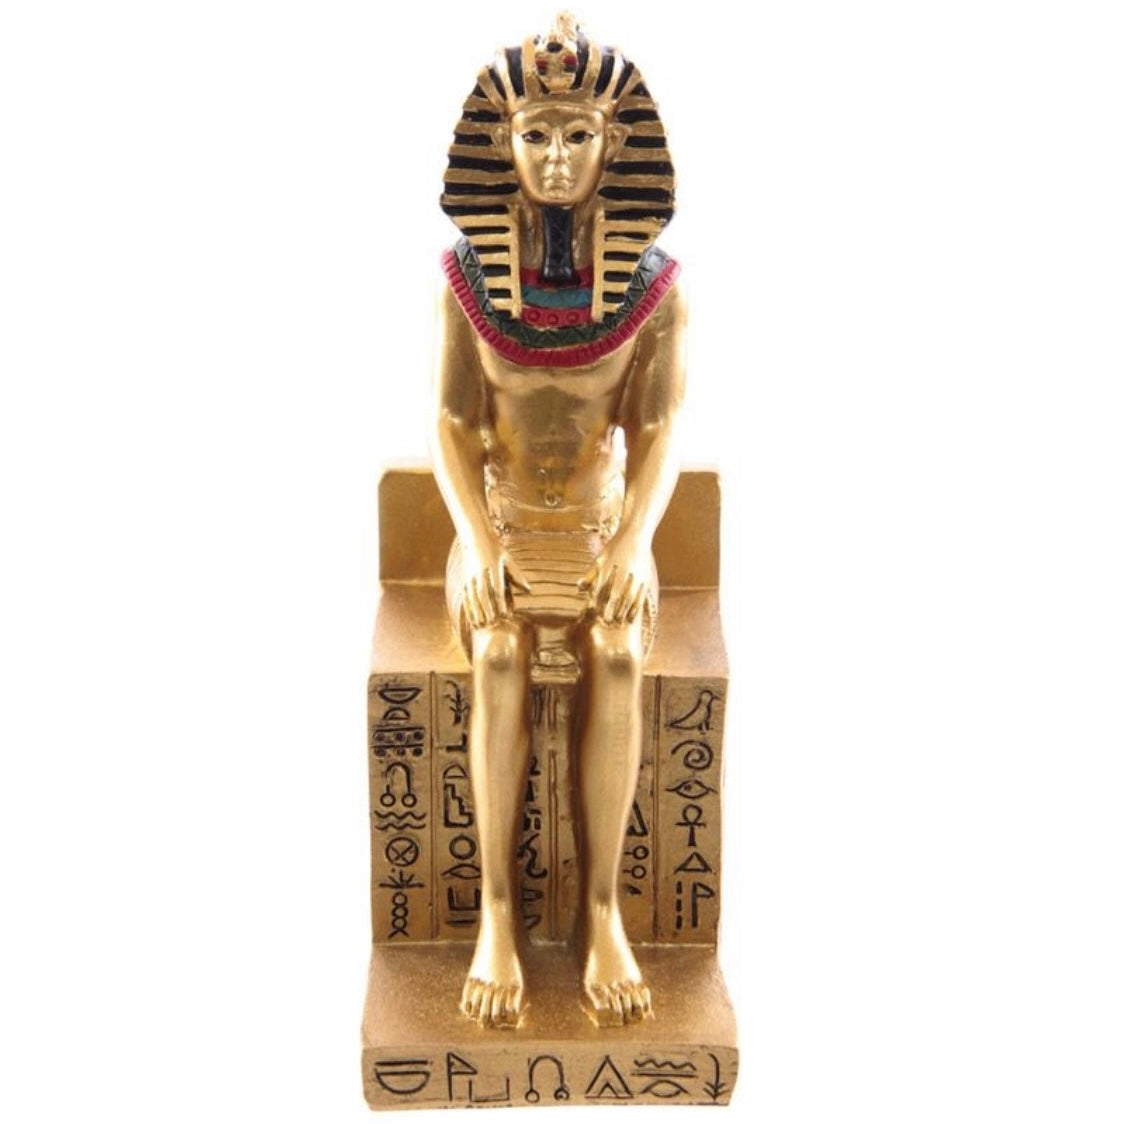 Antico Egitto Statua Ramses II Seduto su Trono con Geroglifici in Resina - Arredo Egiziano 12.5cm - clorophilla-shop